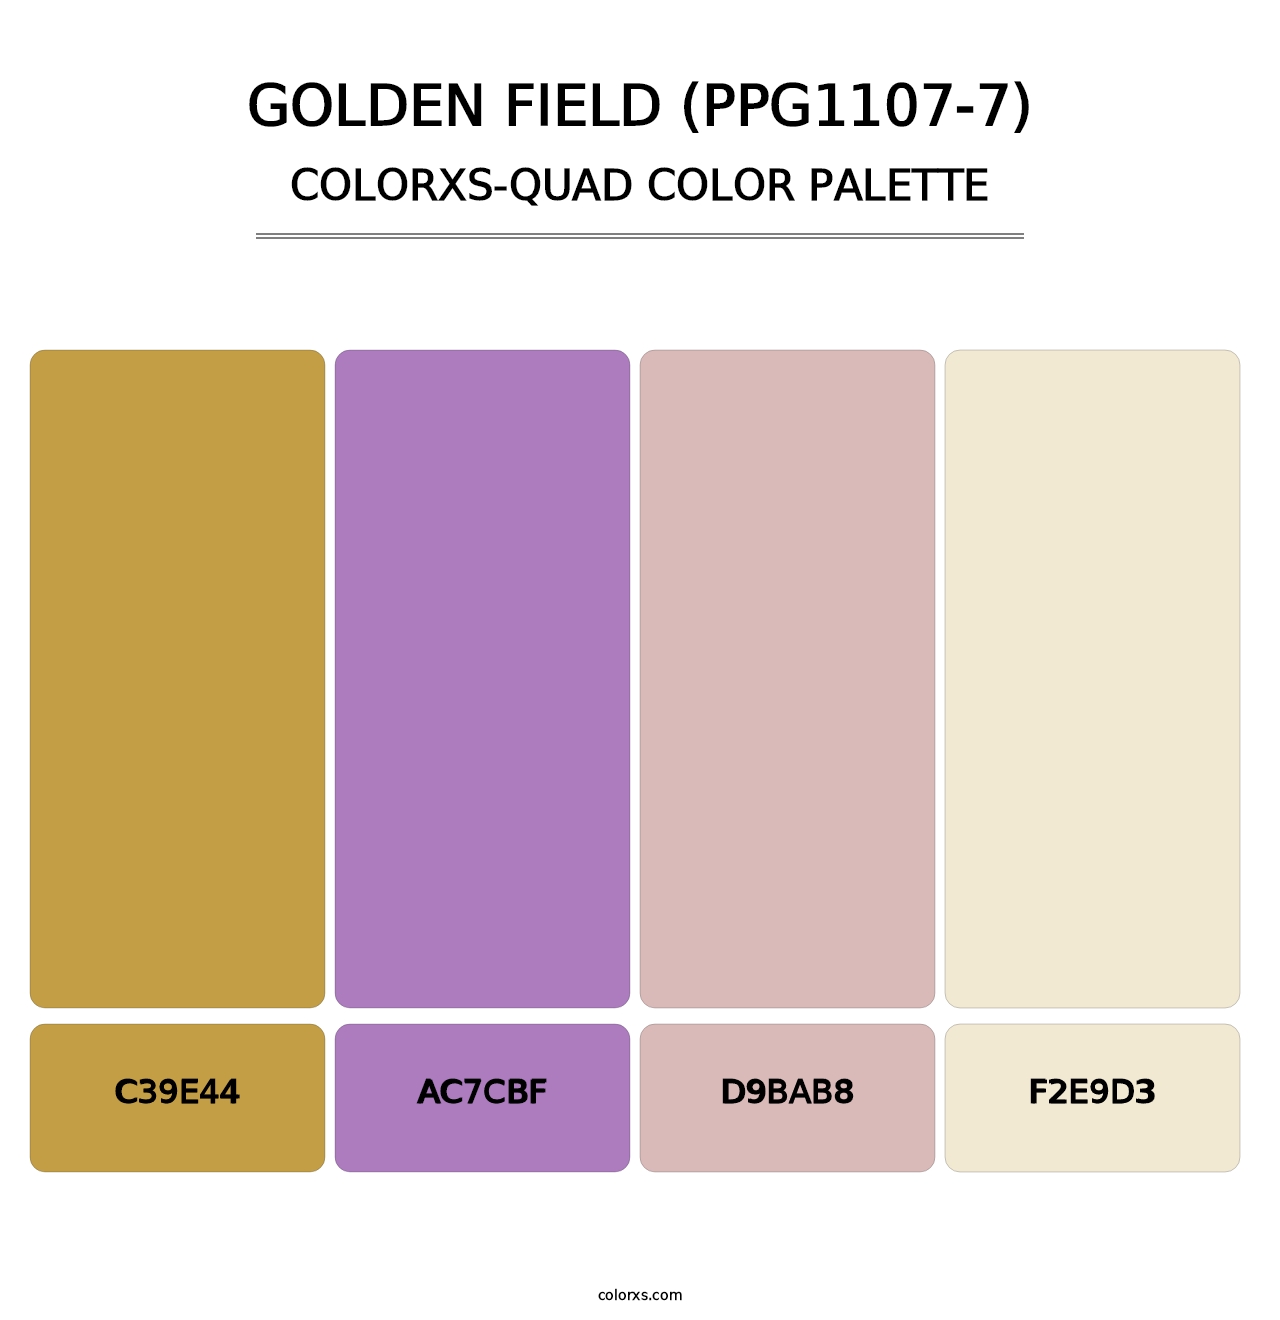 Golden Field (PPG1107-7) - Colorxs Quad Palette